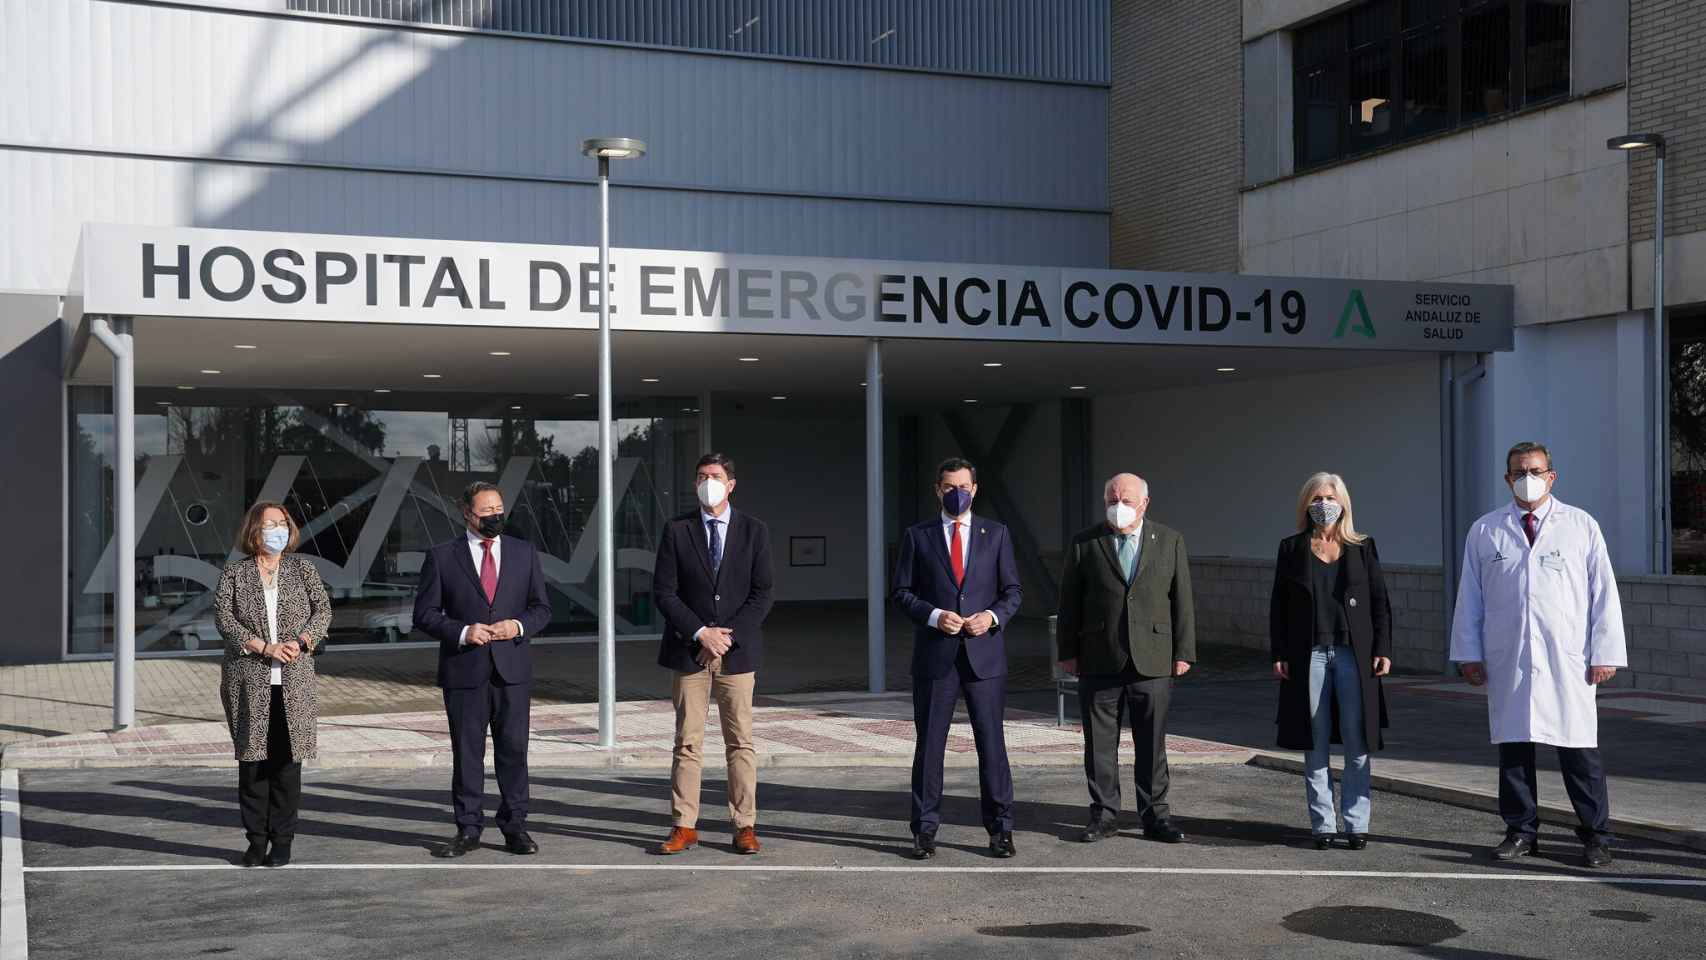 El presidente de la Junta de Andalucía Juanma Moreno junto al vicepresidente Juan Marín, han inaugurado en Sevilla el nuevo Hospital de Emergencia COVID-19.